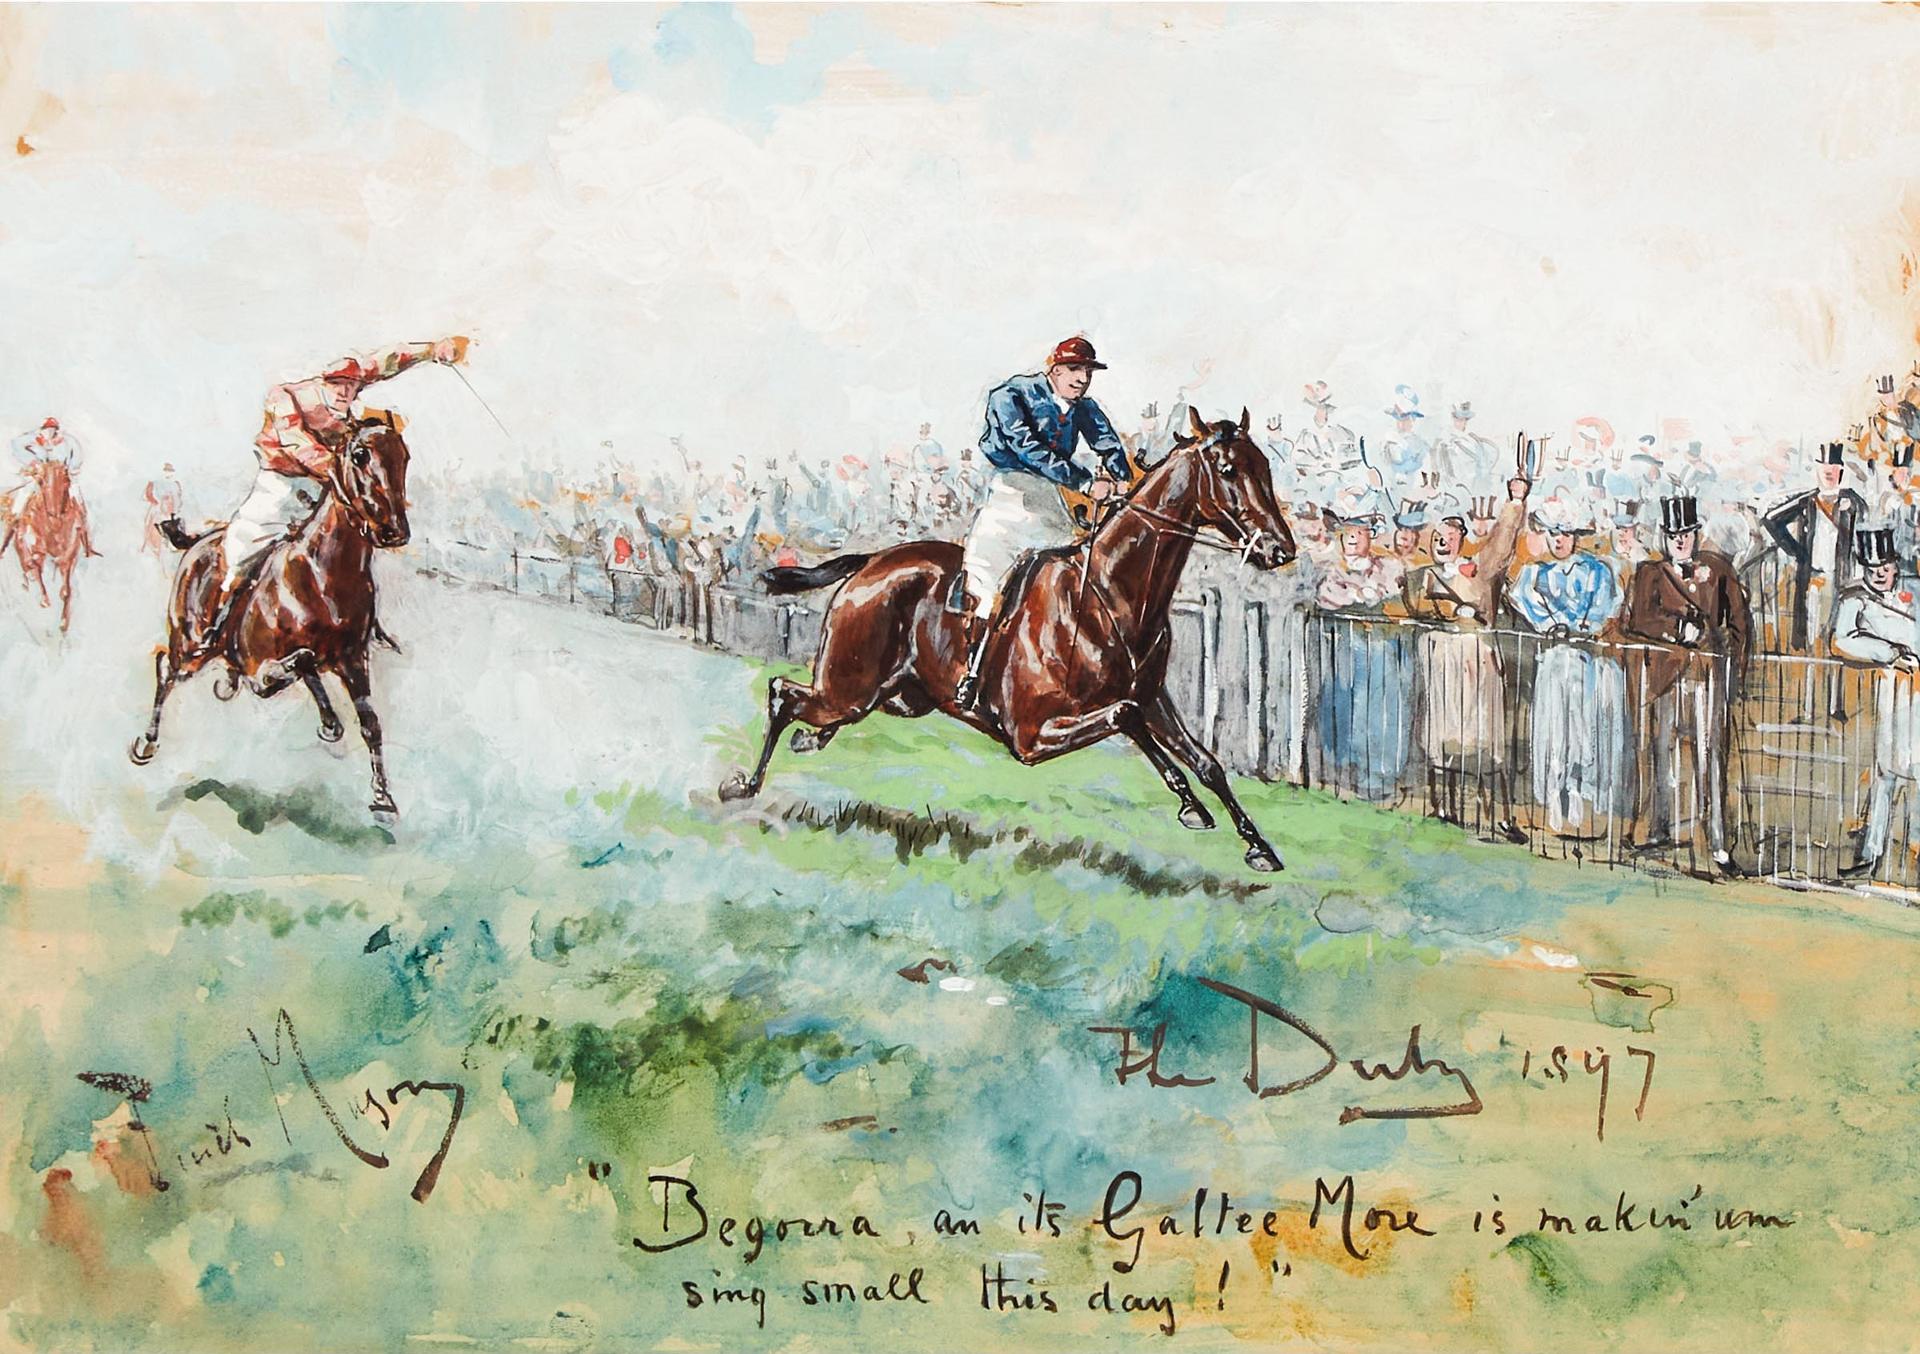 George Finch Mason - The Derby, 1897